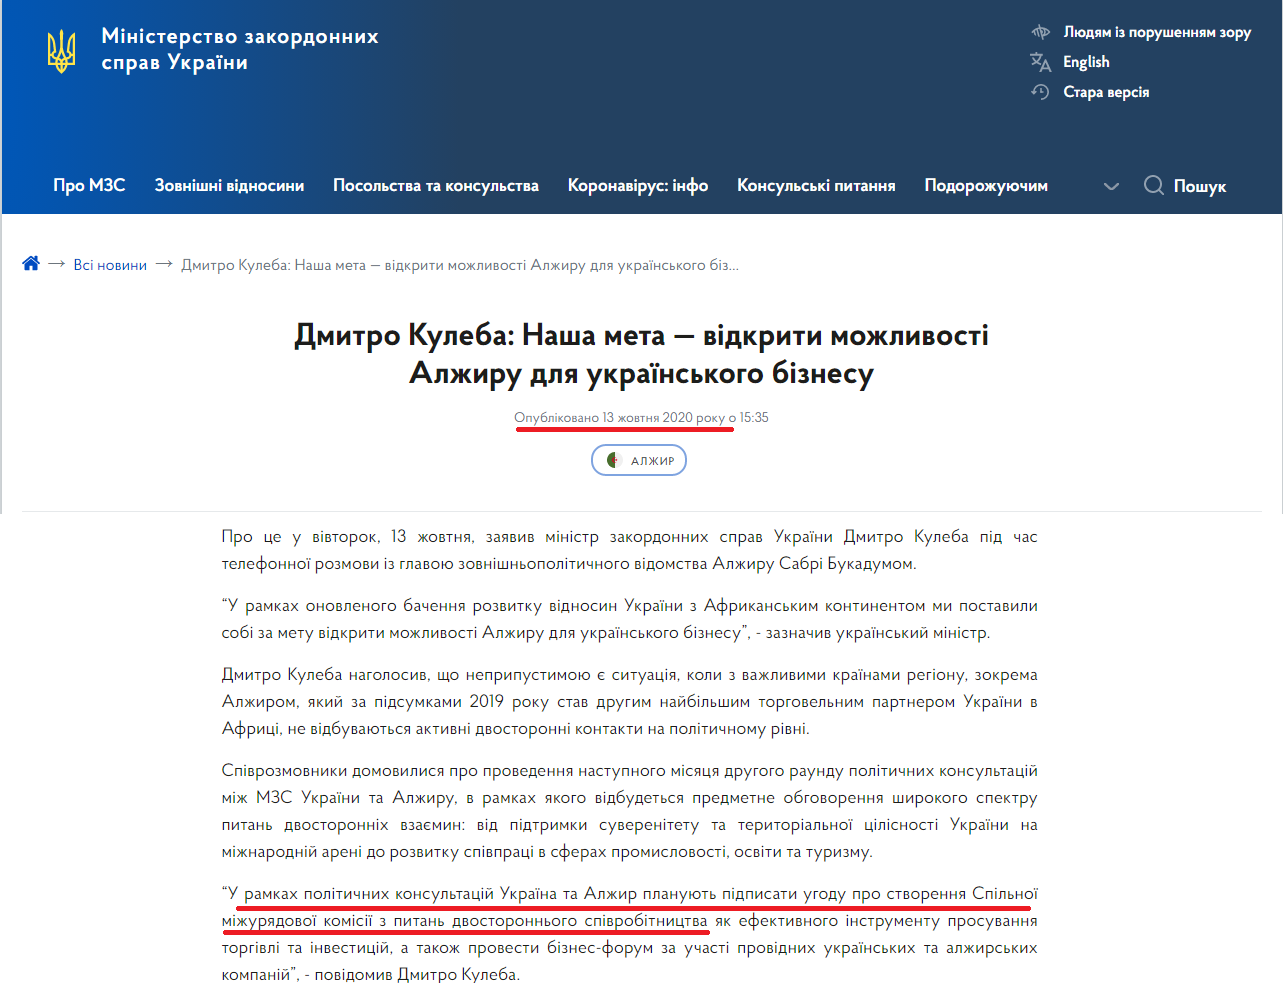 https://mfa.gov.ua/news/dmitro-kuleba-nasha-meta-vidkriti-mozhlivosti-alzhiru-dlya-ukrayinskogo-biznesu